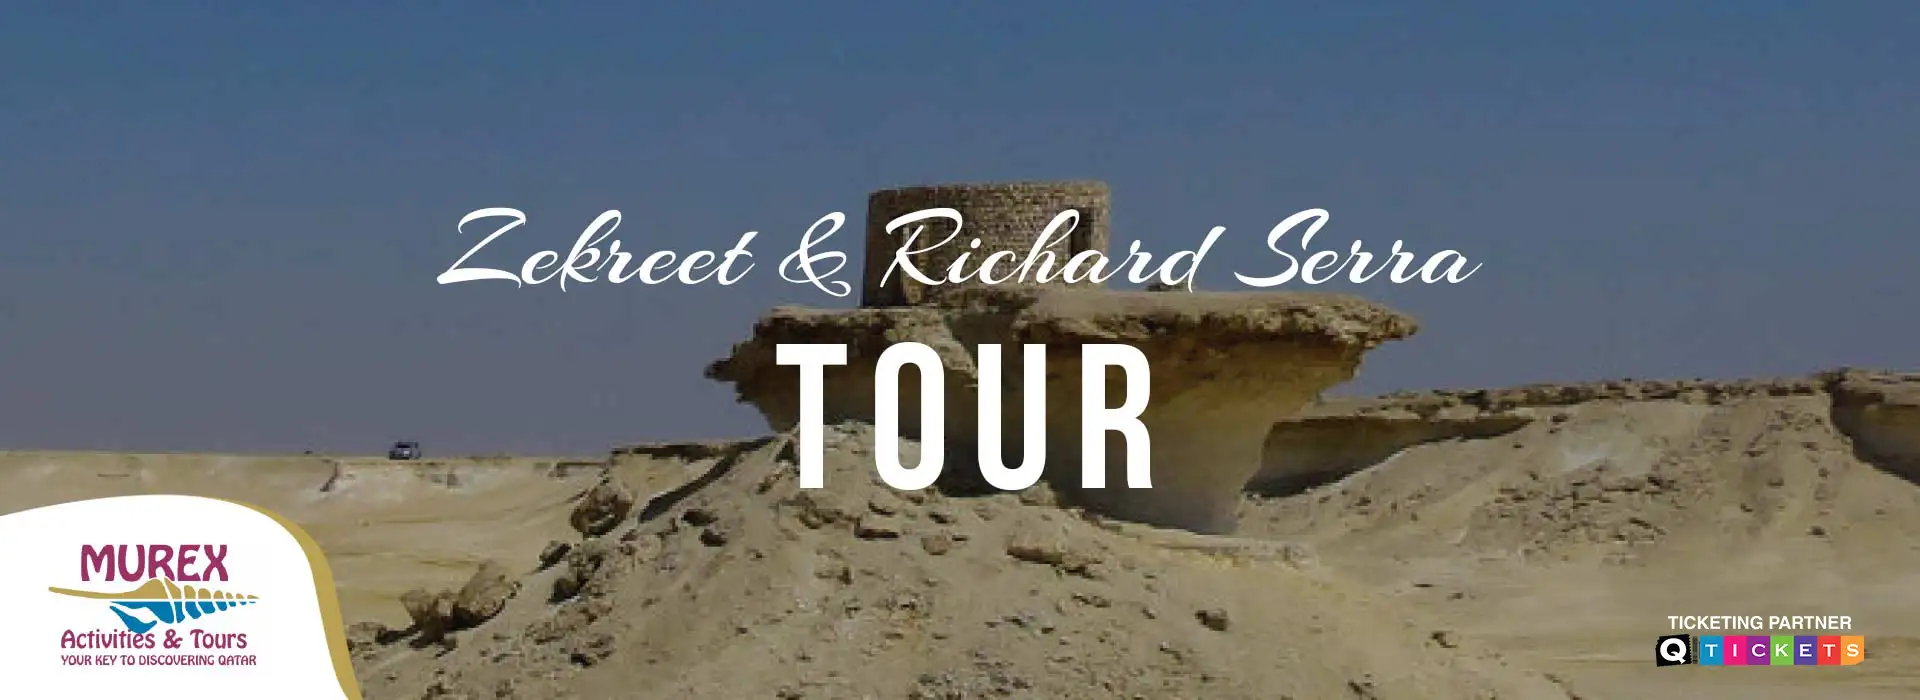 Zekreet and Richard Serra Tour (4 Hours)